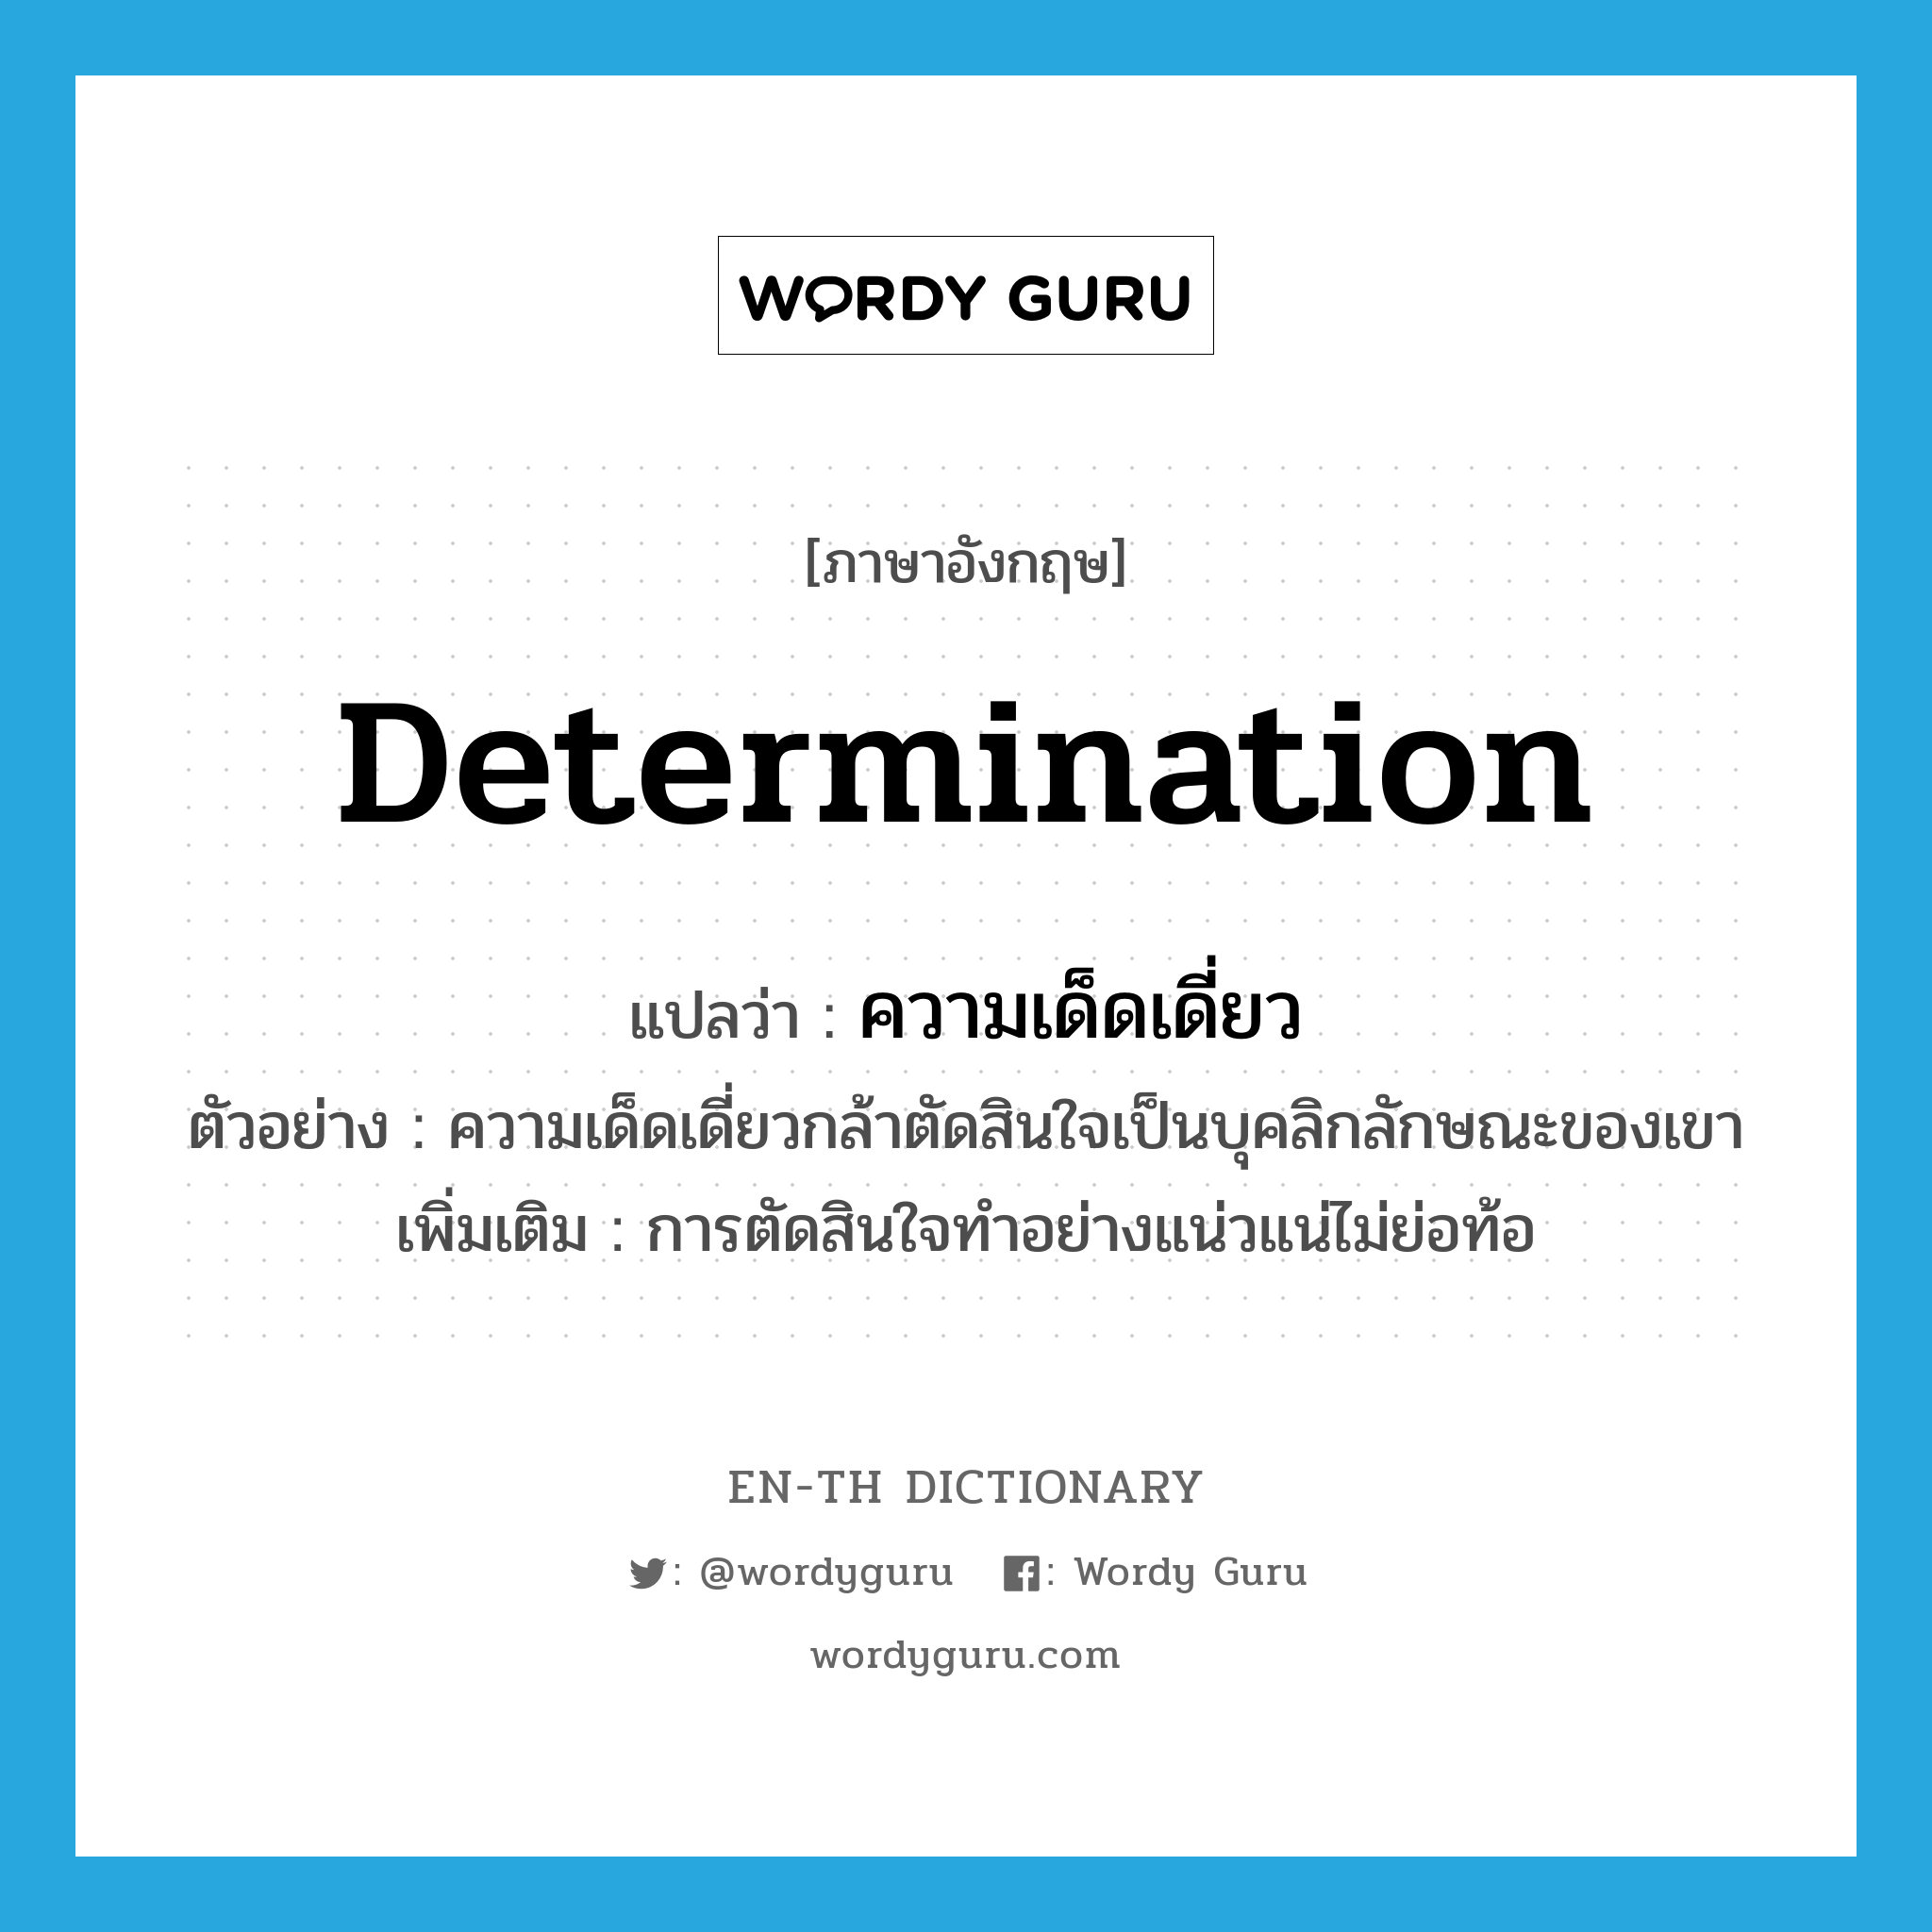 determination แปลว่า?, คำศัพท์ภาษาอังกฤษ determination แปลว่า ความเด็ดเดี่ยว ประเภท N ตัวอย่าง ความเด็ดเดี่ยวกล้าตัดสินใจเป็นบุคลิกลักษณะของเขา เพิ่มเติม การตัดสินใจทำอย่างแน่วแน่ไม่ย่อท้อ หมวด N